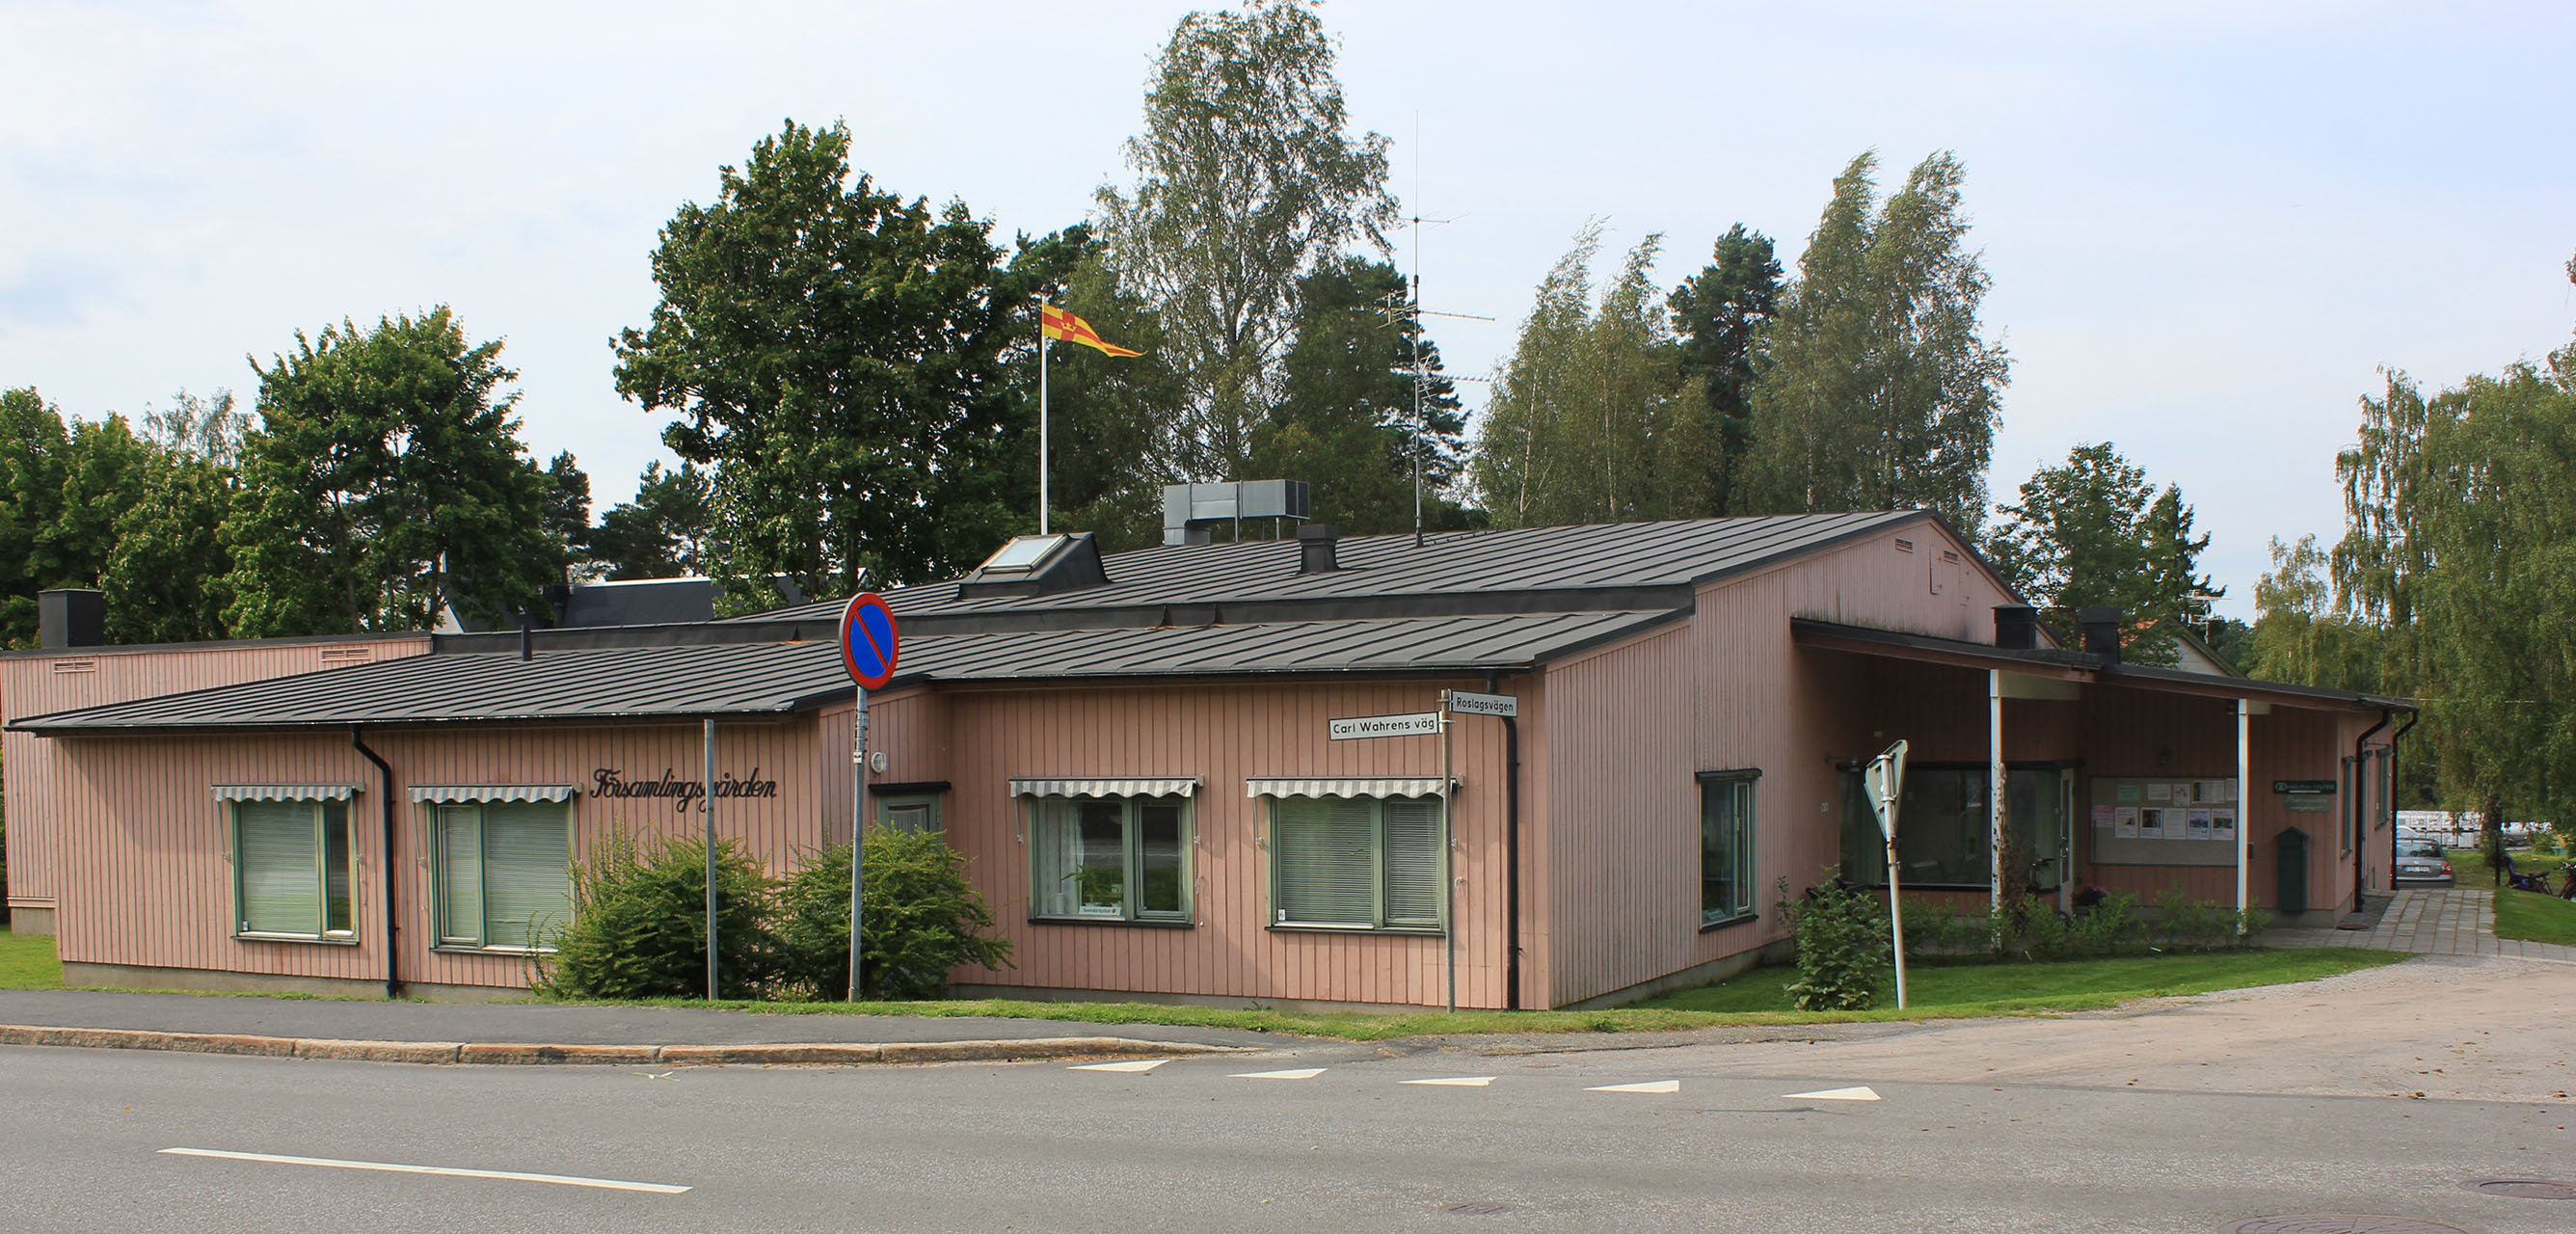 Församlingsgården, Almerska vägen 6 i Hallstavik, det rosa huset